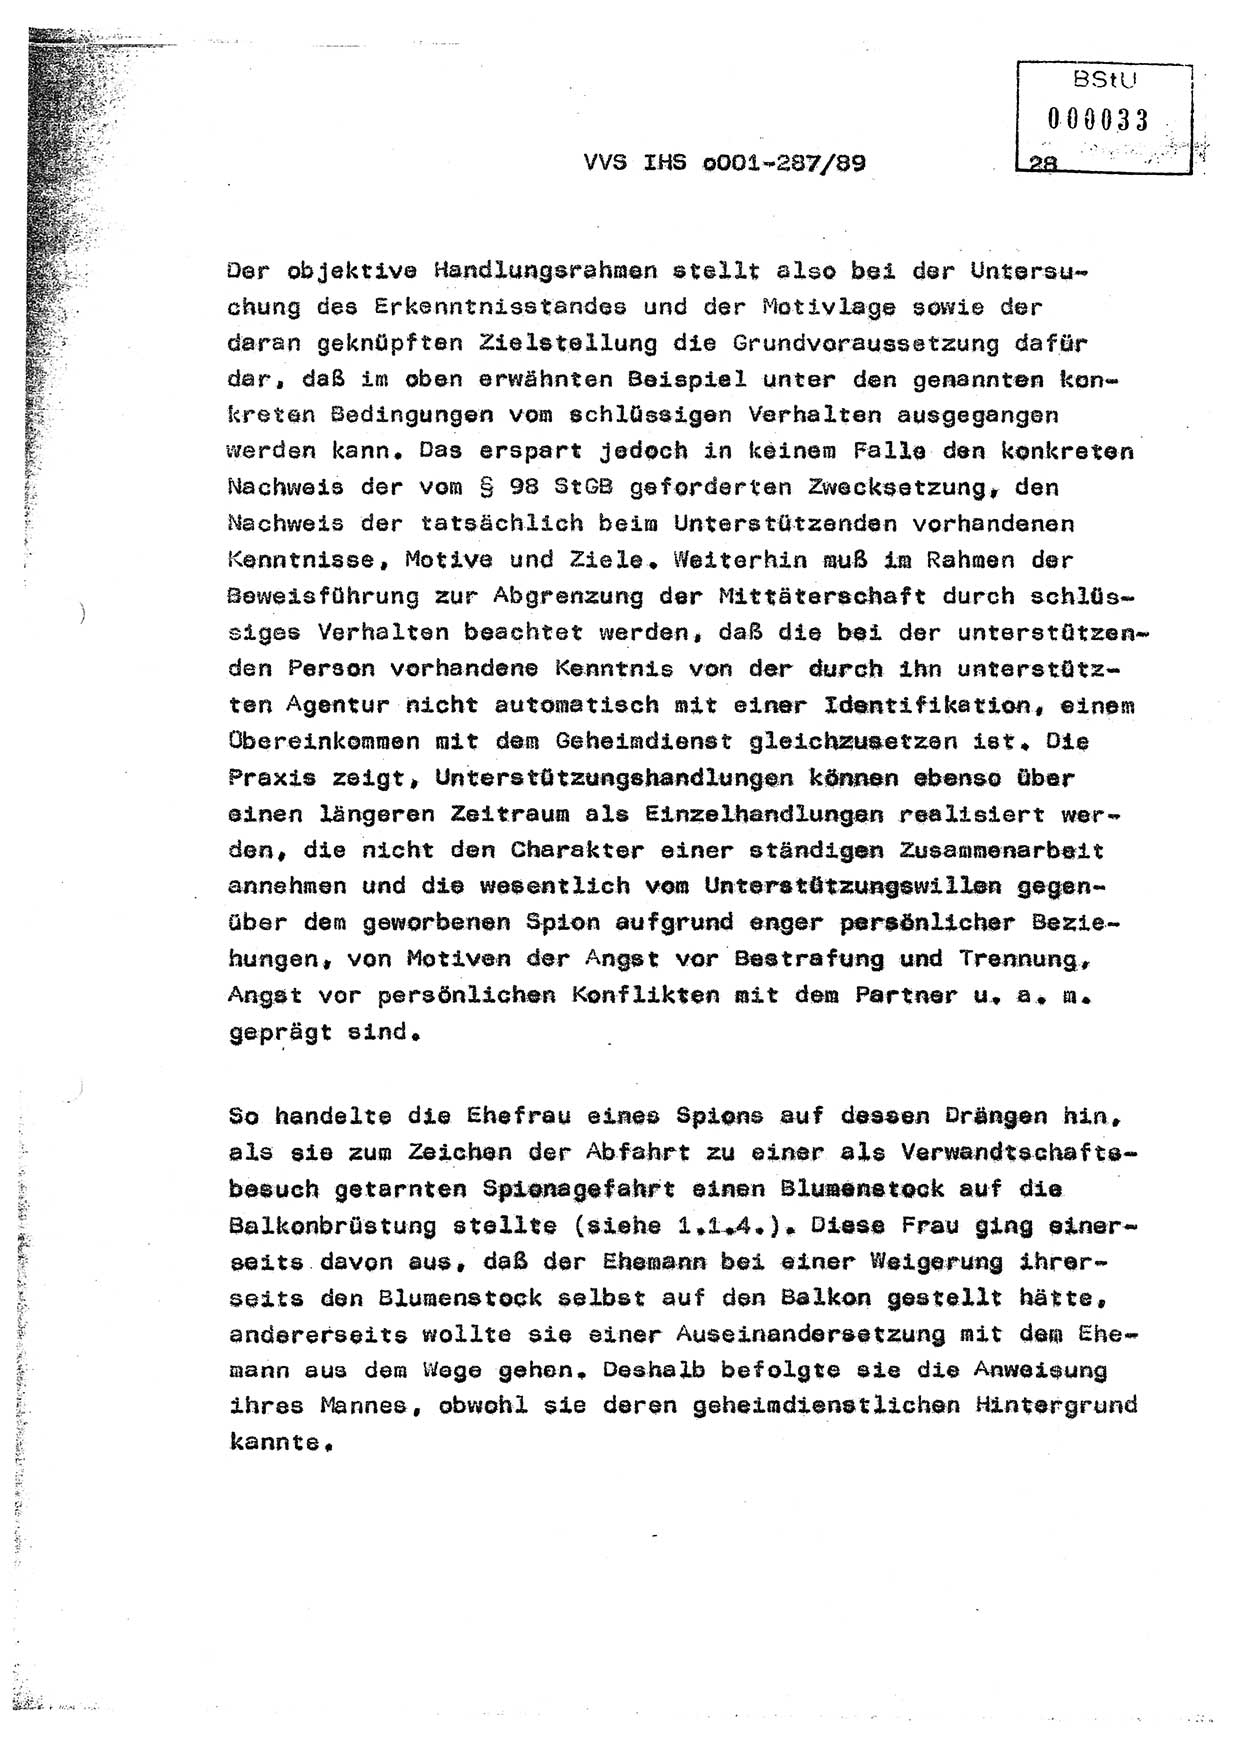 Diplomarbeit, Offiziersschüler Harald Wabst (HA Ⅸ/1), Ministerium für Staatssicherheit (MfS) [Deutsche Demokratische Republik (DDR)], Juristische Hochschule (JHS), Vertrauliche Verschlußsache (VVS) o001-287/89, Potsdam 1989, Seite 28 (Dipl.-Arb. MfS DDR JHS VVS o001-287/89 1989, S. 28)